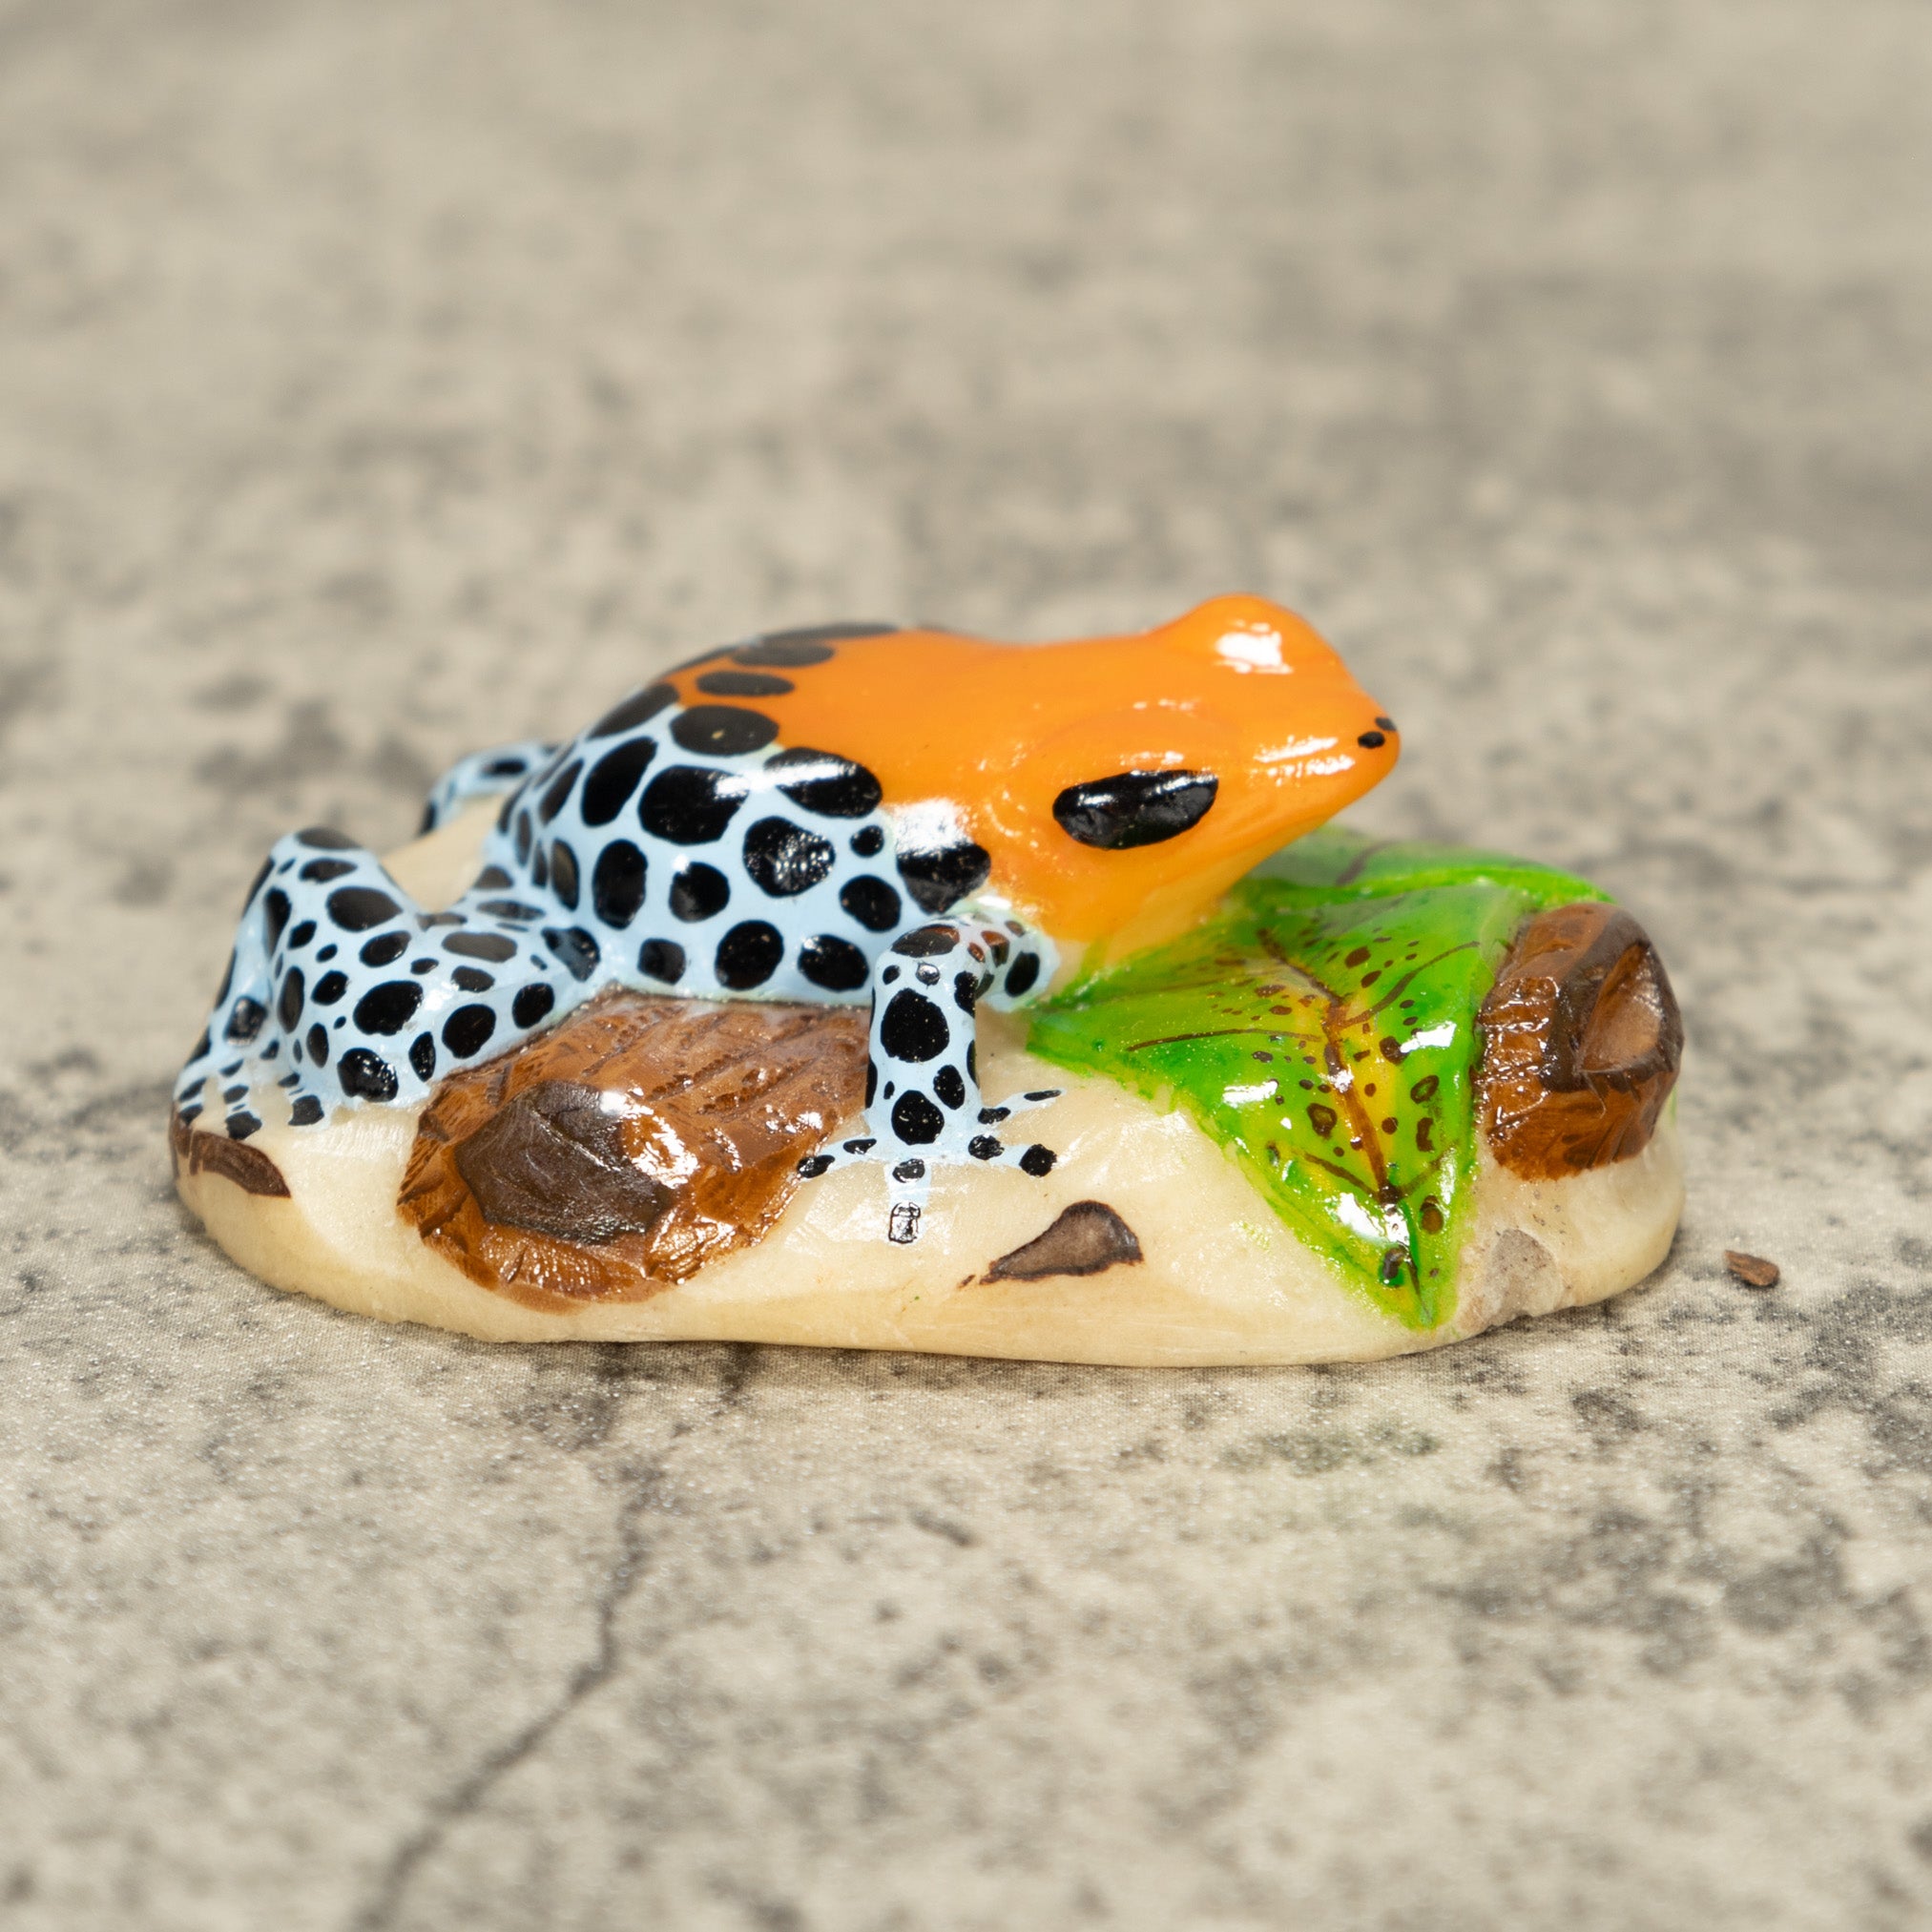 Orange Blue And Black Poison Dart Frog Tagua Nut Carving